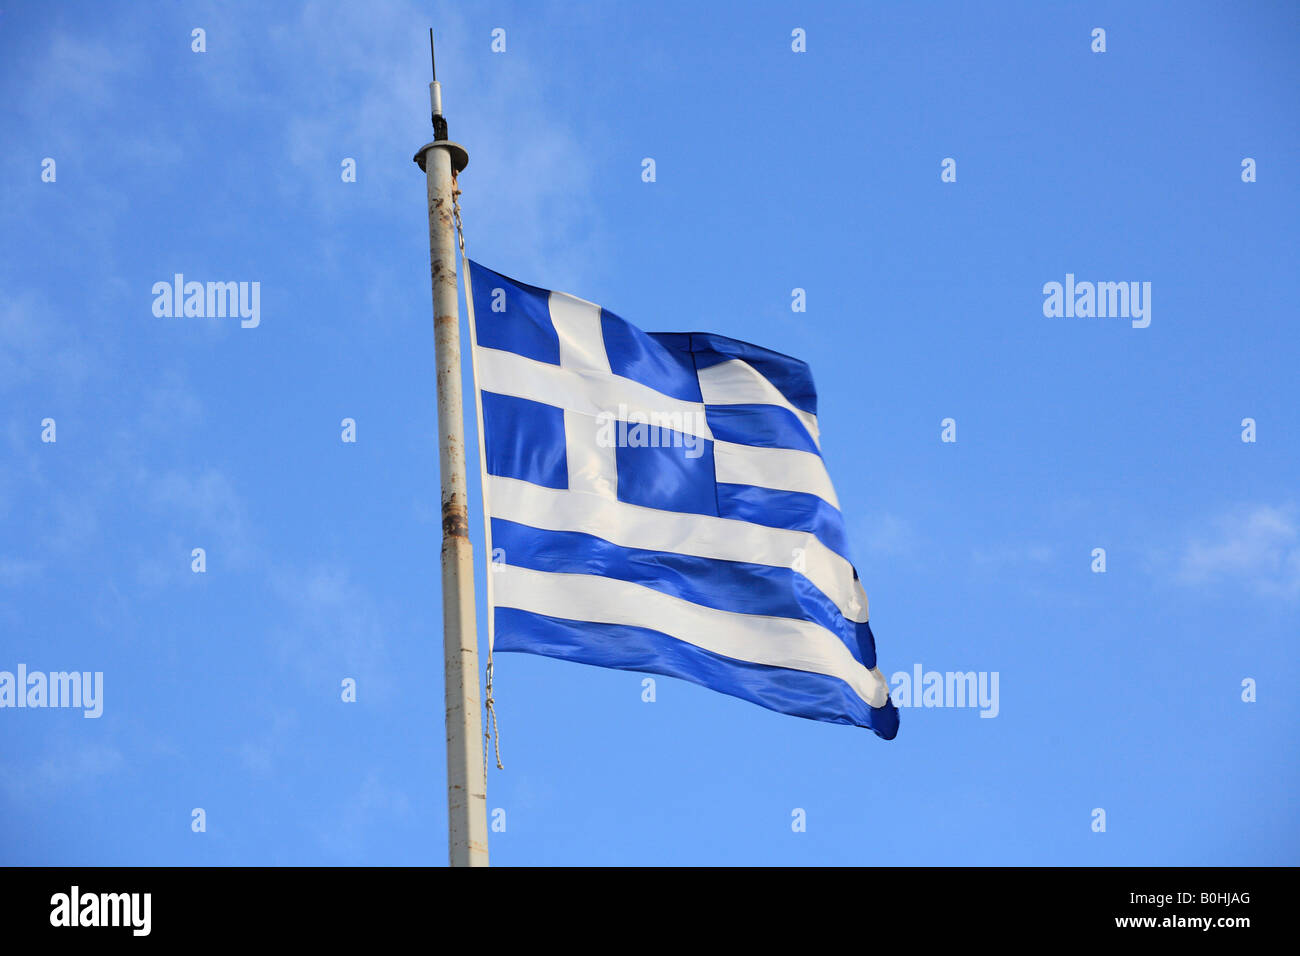 Greek flag against a blue sky Stock Photo